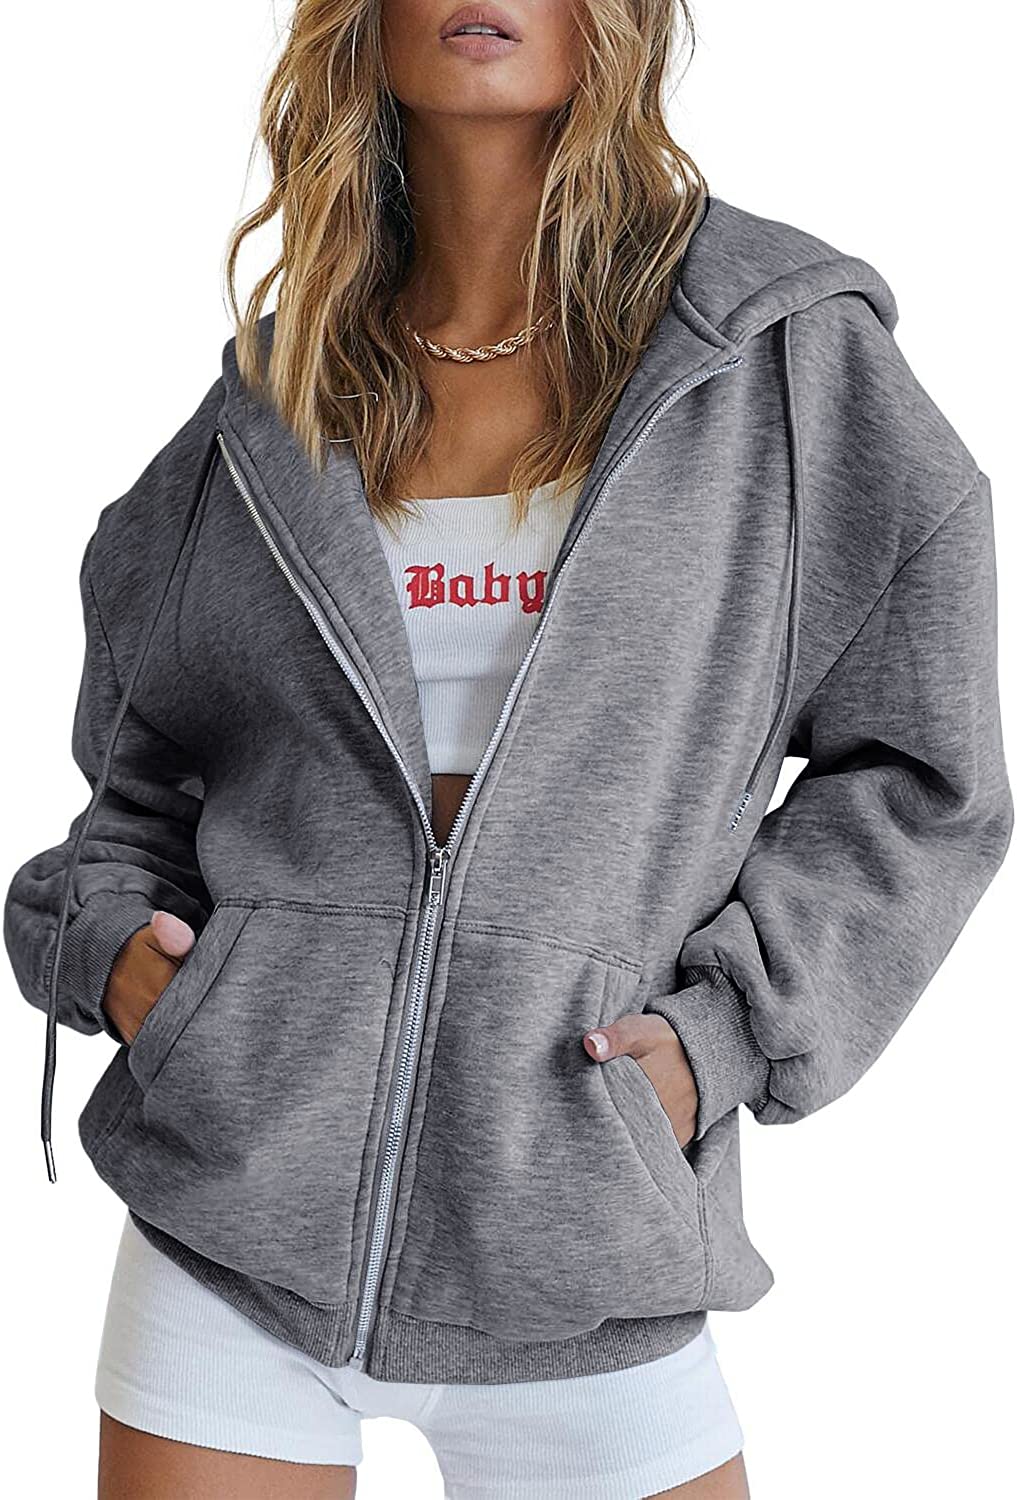 EFAN Women's Cute Hoodies Teen Girl Fall Jacket Oversized